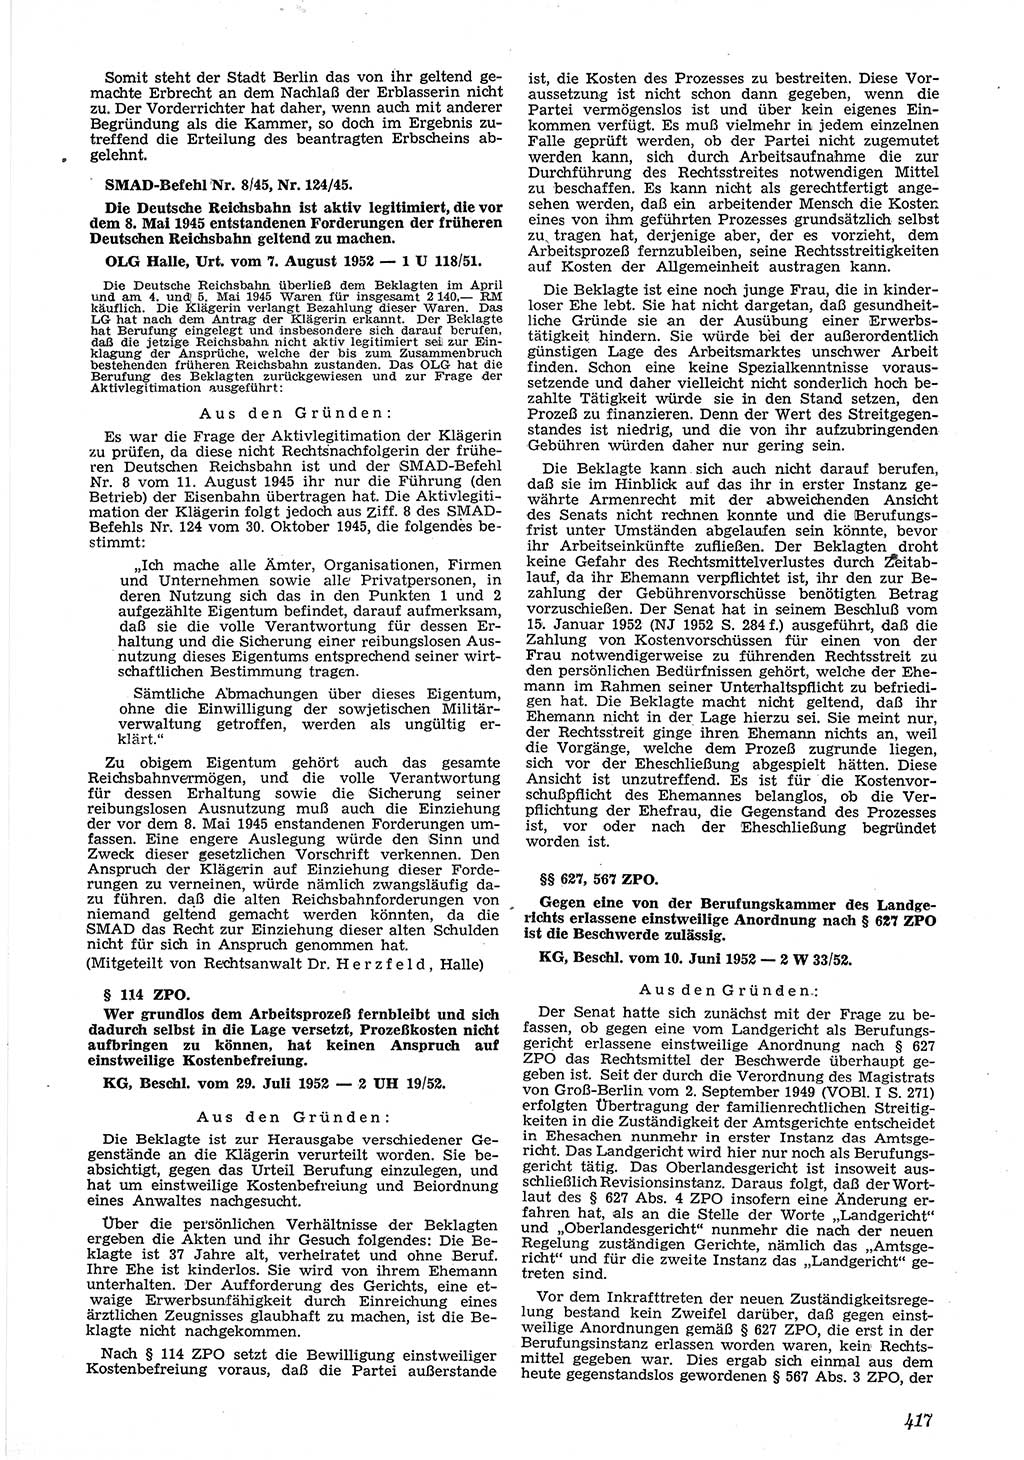 Neue Justiz (NJ), Zeitschrift für Recht und Rechtswissenschaft [Deutsche Demokratische Republik (DDR)], 6. Jahrgang 1952, Seite 417 (NJ DDR 1952, S. 417)